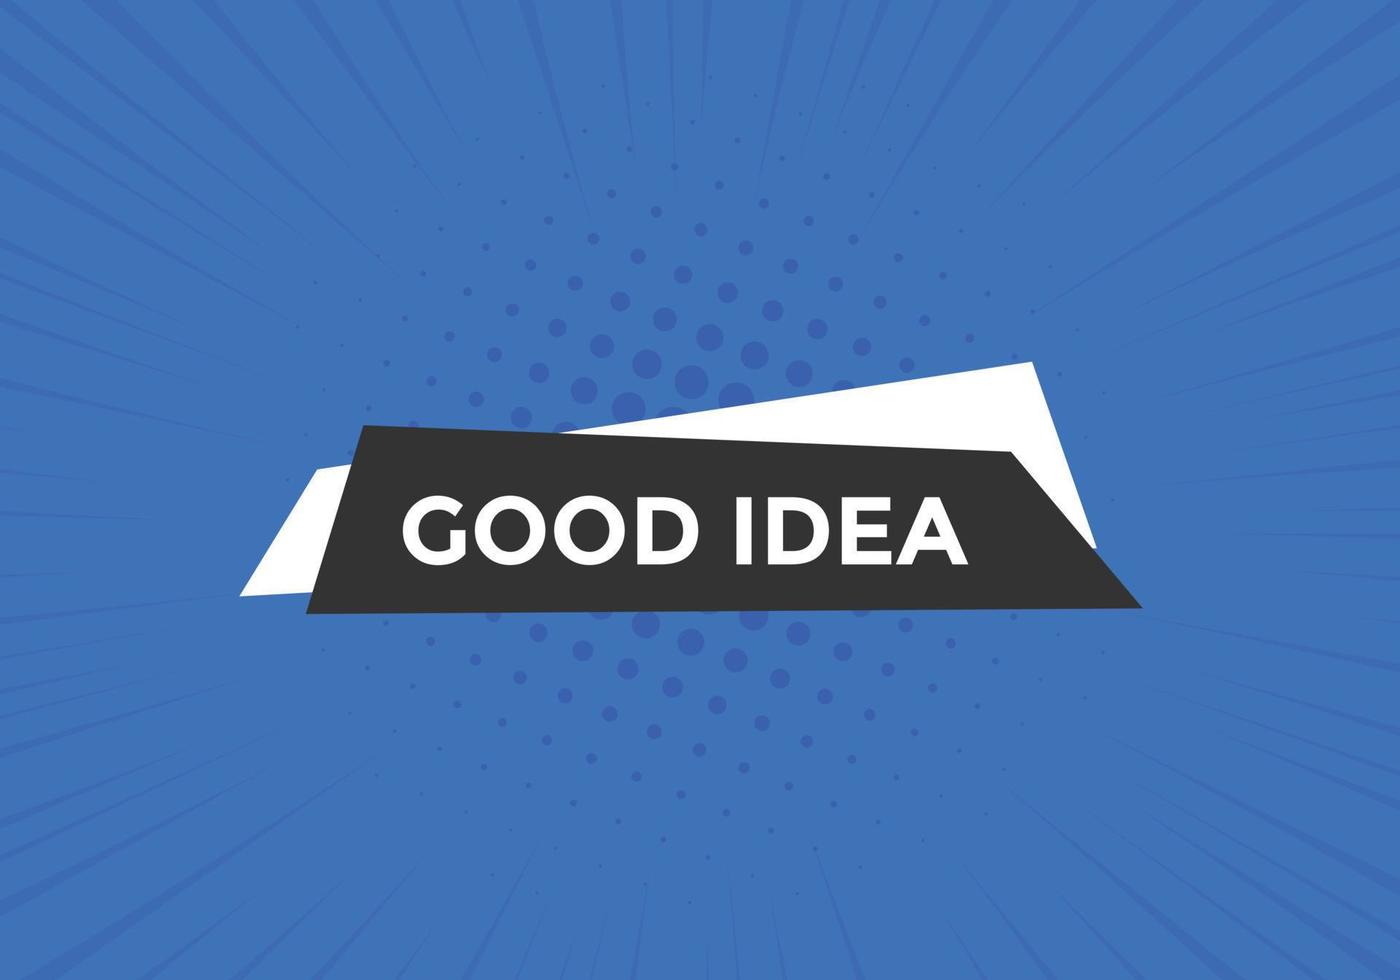 botão de boa ideia. modelo de banner da web de texto de boa ideia. bandeira de ícone de sinal vetor